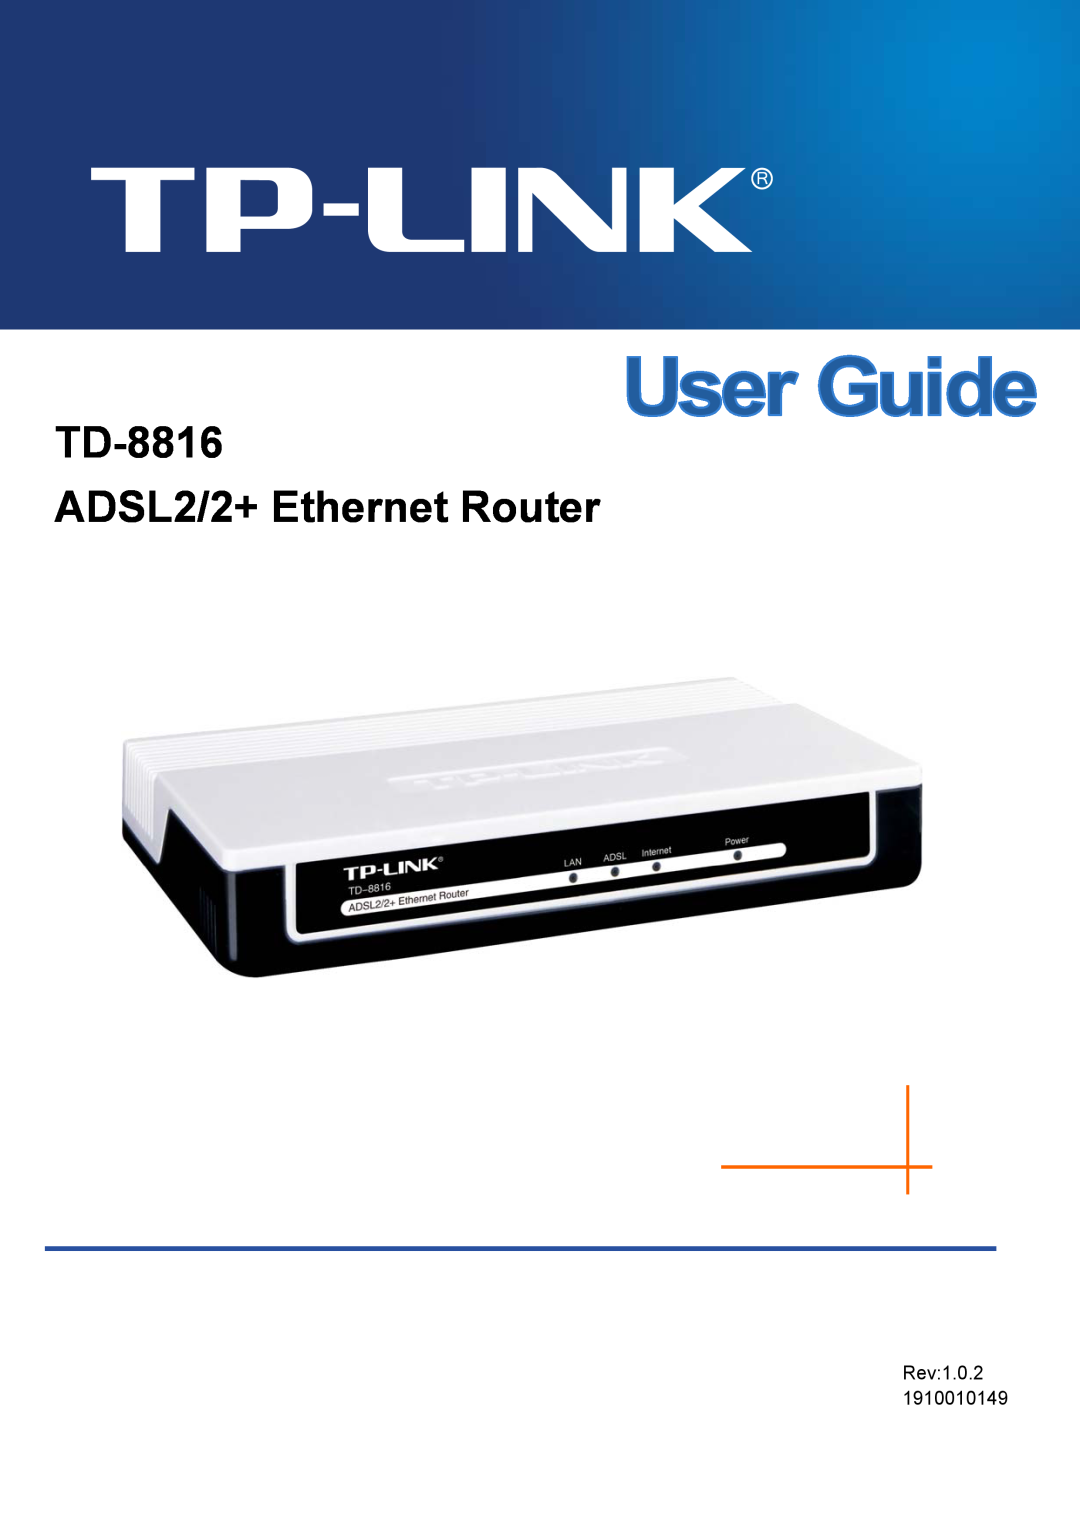 TP-Link manual TD-8816 ADSL2+ Modem Router, Rev3.1.0 1910010870 